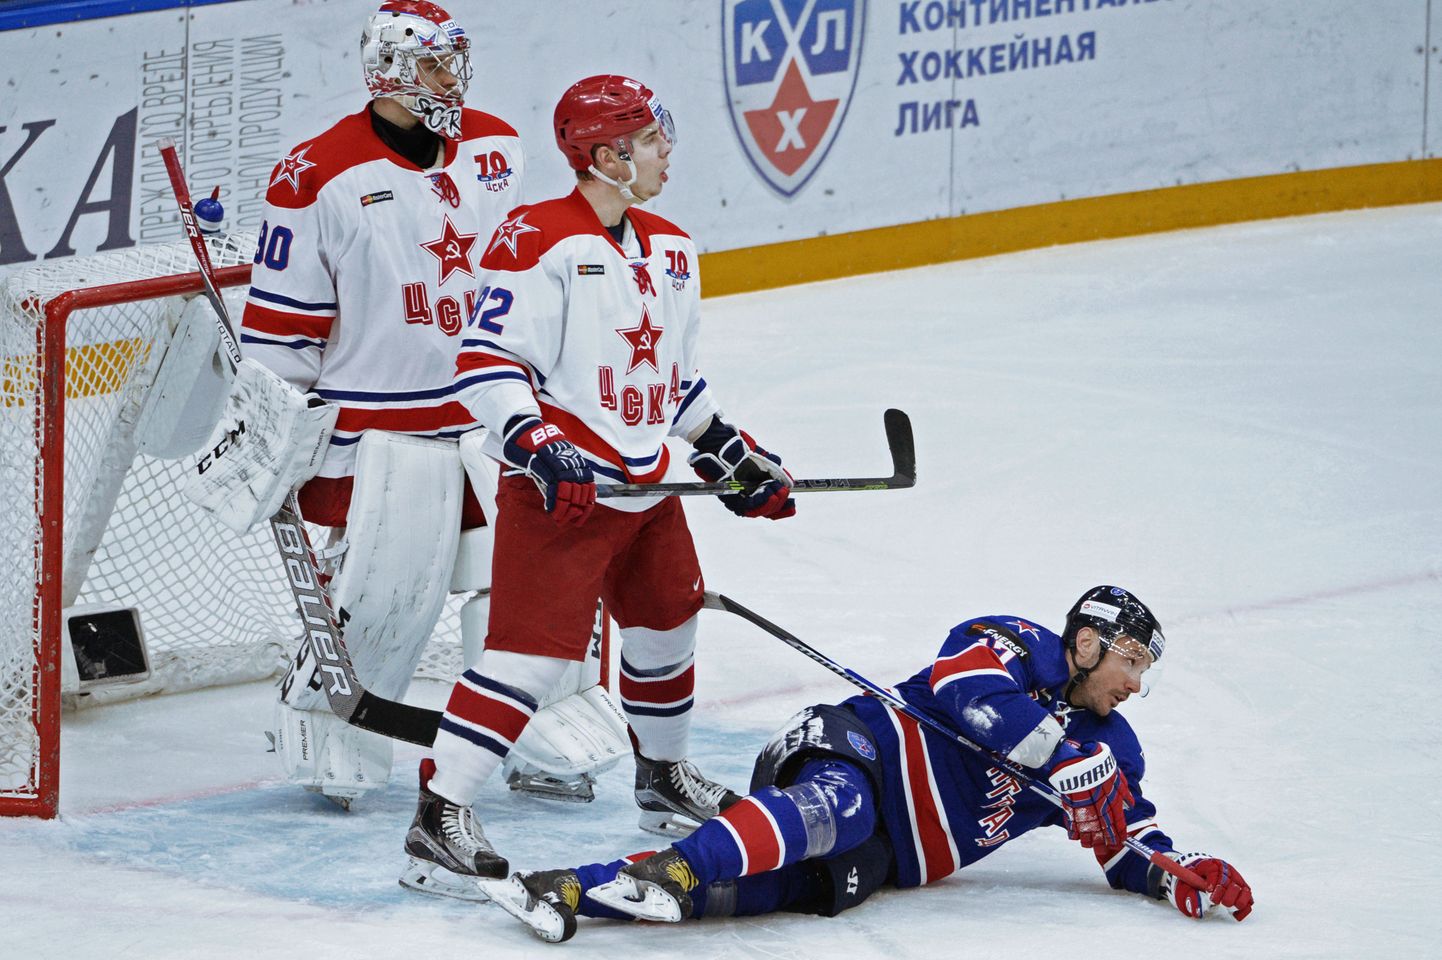 Илья Ковальчук (в синем свитере) в матче против ЦСКА.